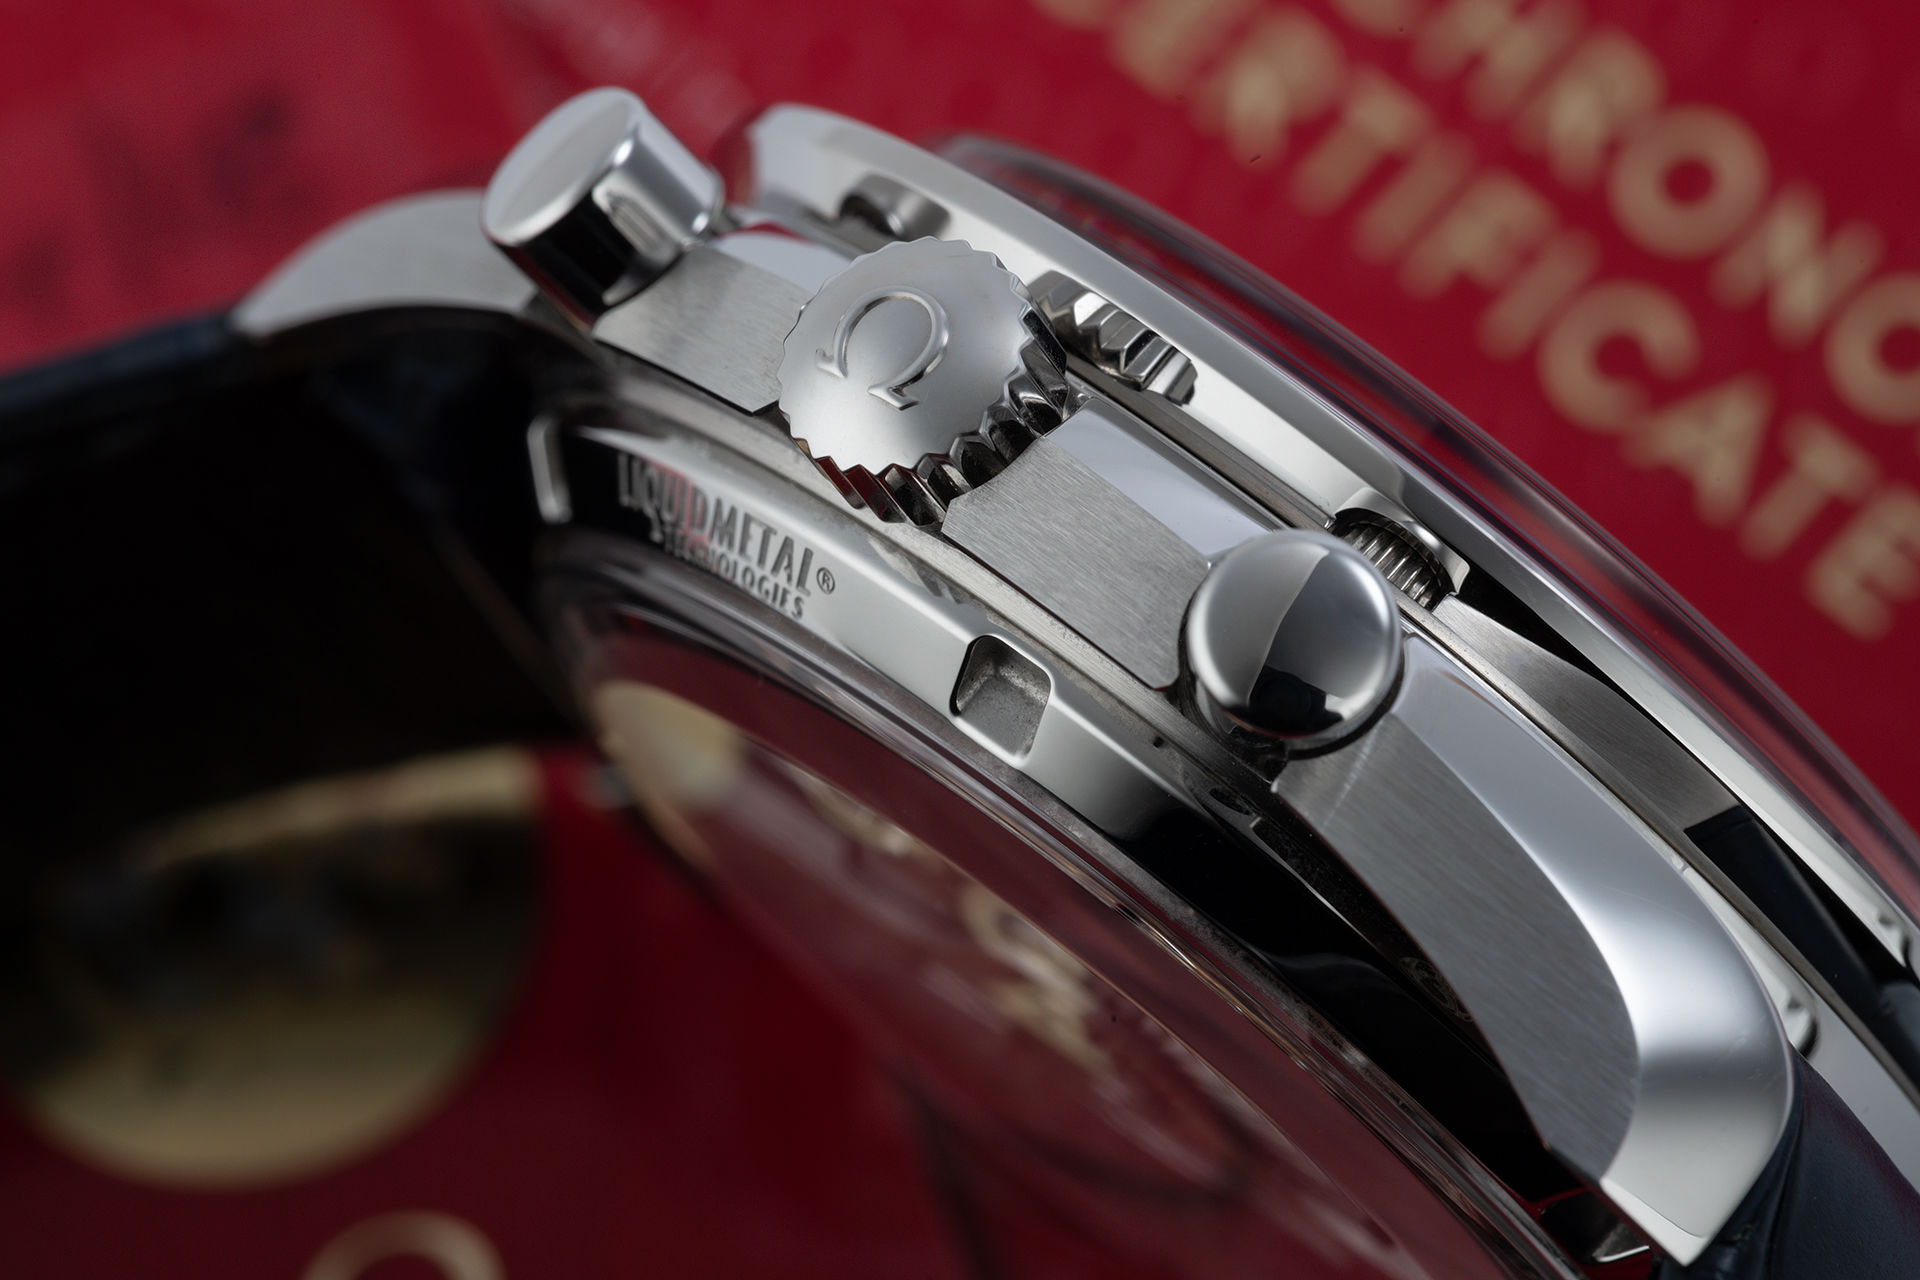 ref 30433445203001 | 'Master Chronometer' Complete Set | Omega Speedmaster